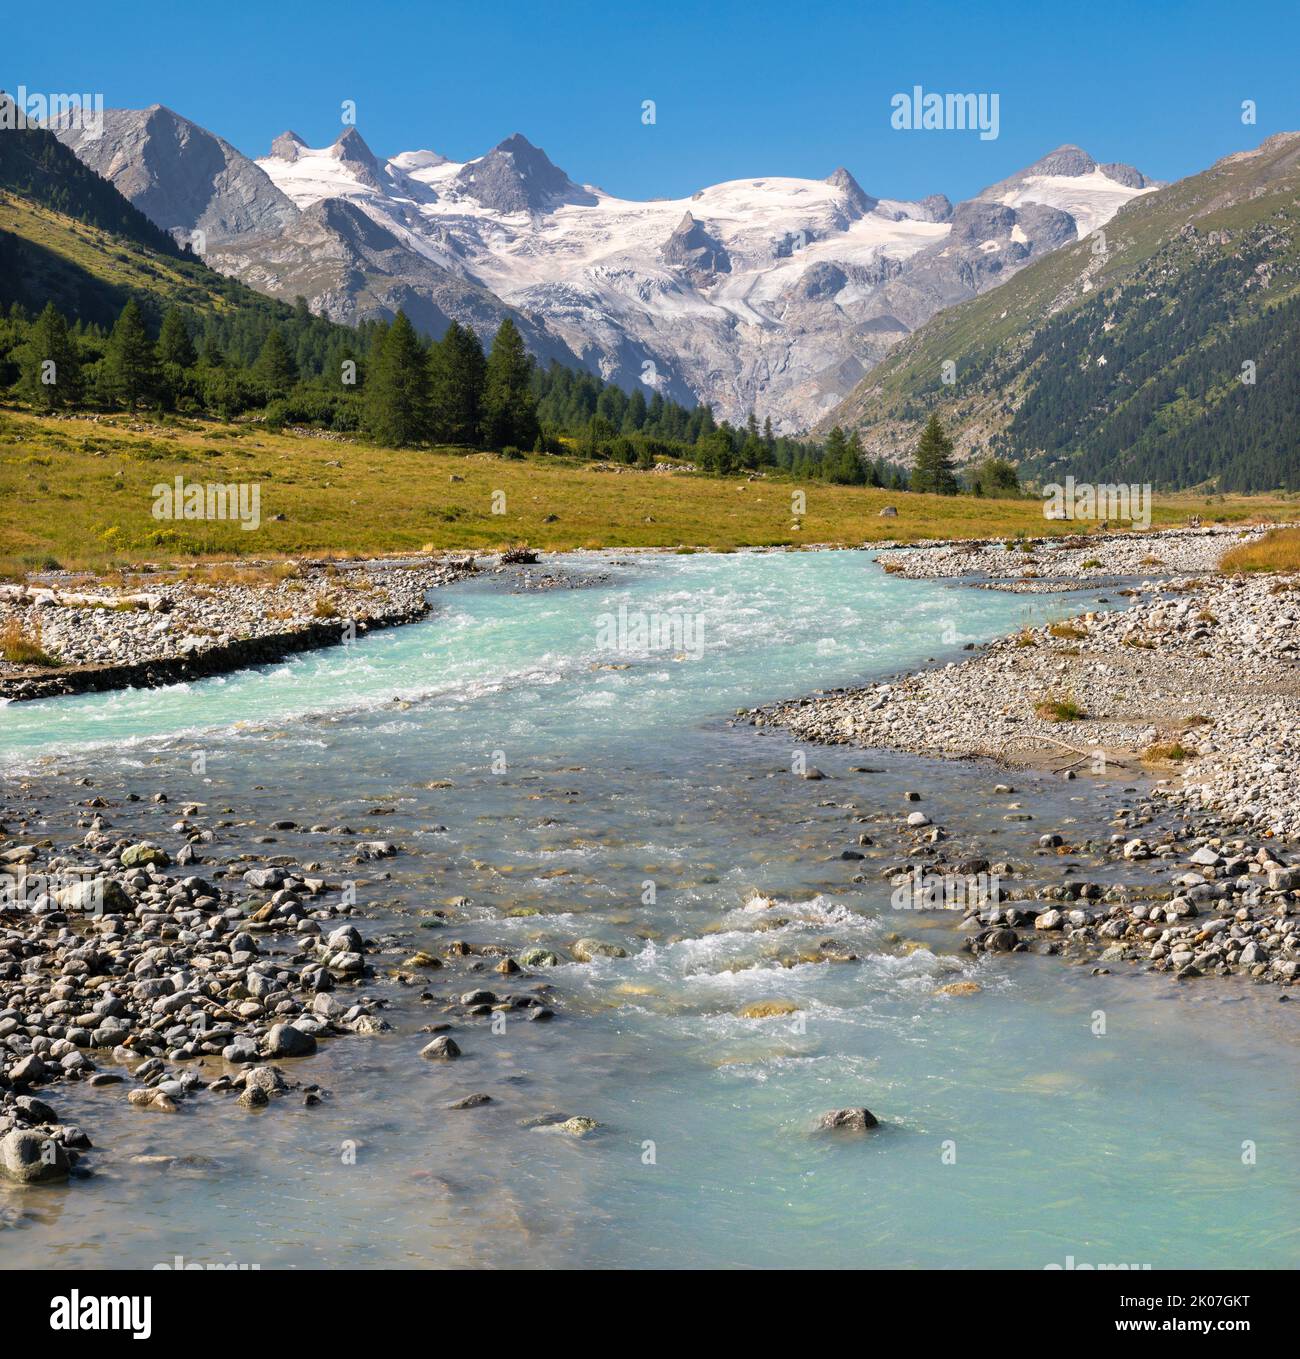 Switzerland - The Roseg valley under the peaks Il Caputschin, La Muongia, Forcola Alta and Roseg Glacier. Stock Photo